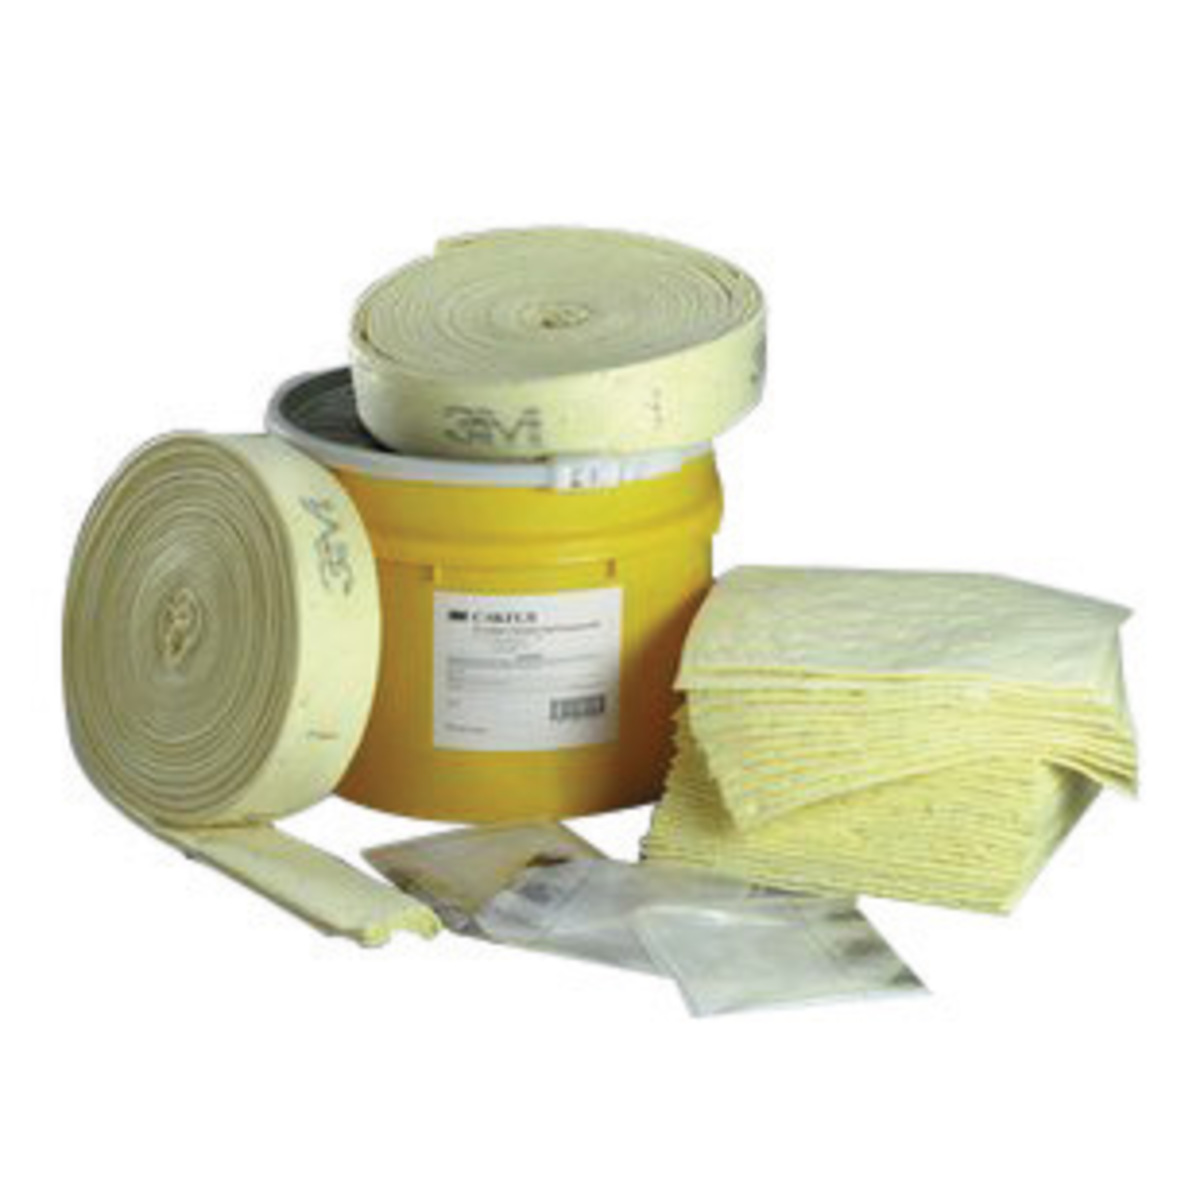 3M™ 20 gal Drum Yellow Polypropylene Spill Kit